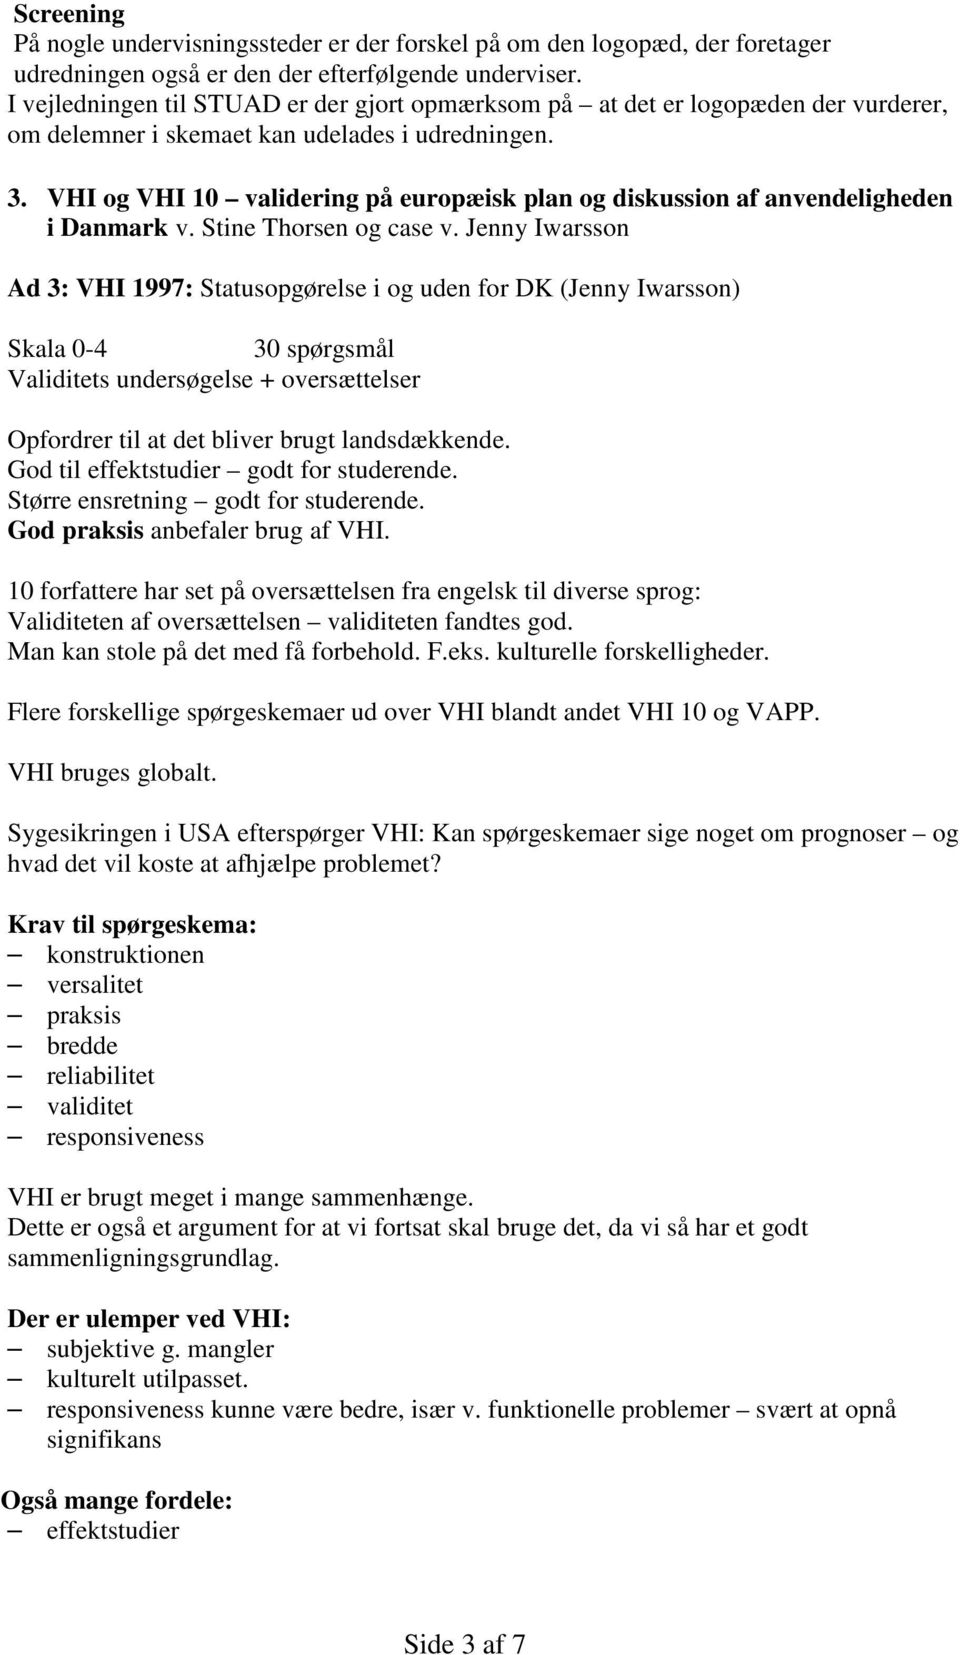 VHI og VHI 10 validering på europæisk plan og diskussion af anvendeligheden i Danmark v. Stine Thorsen og case v.